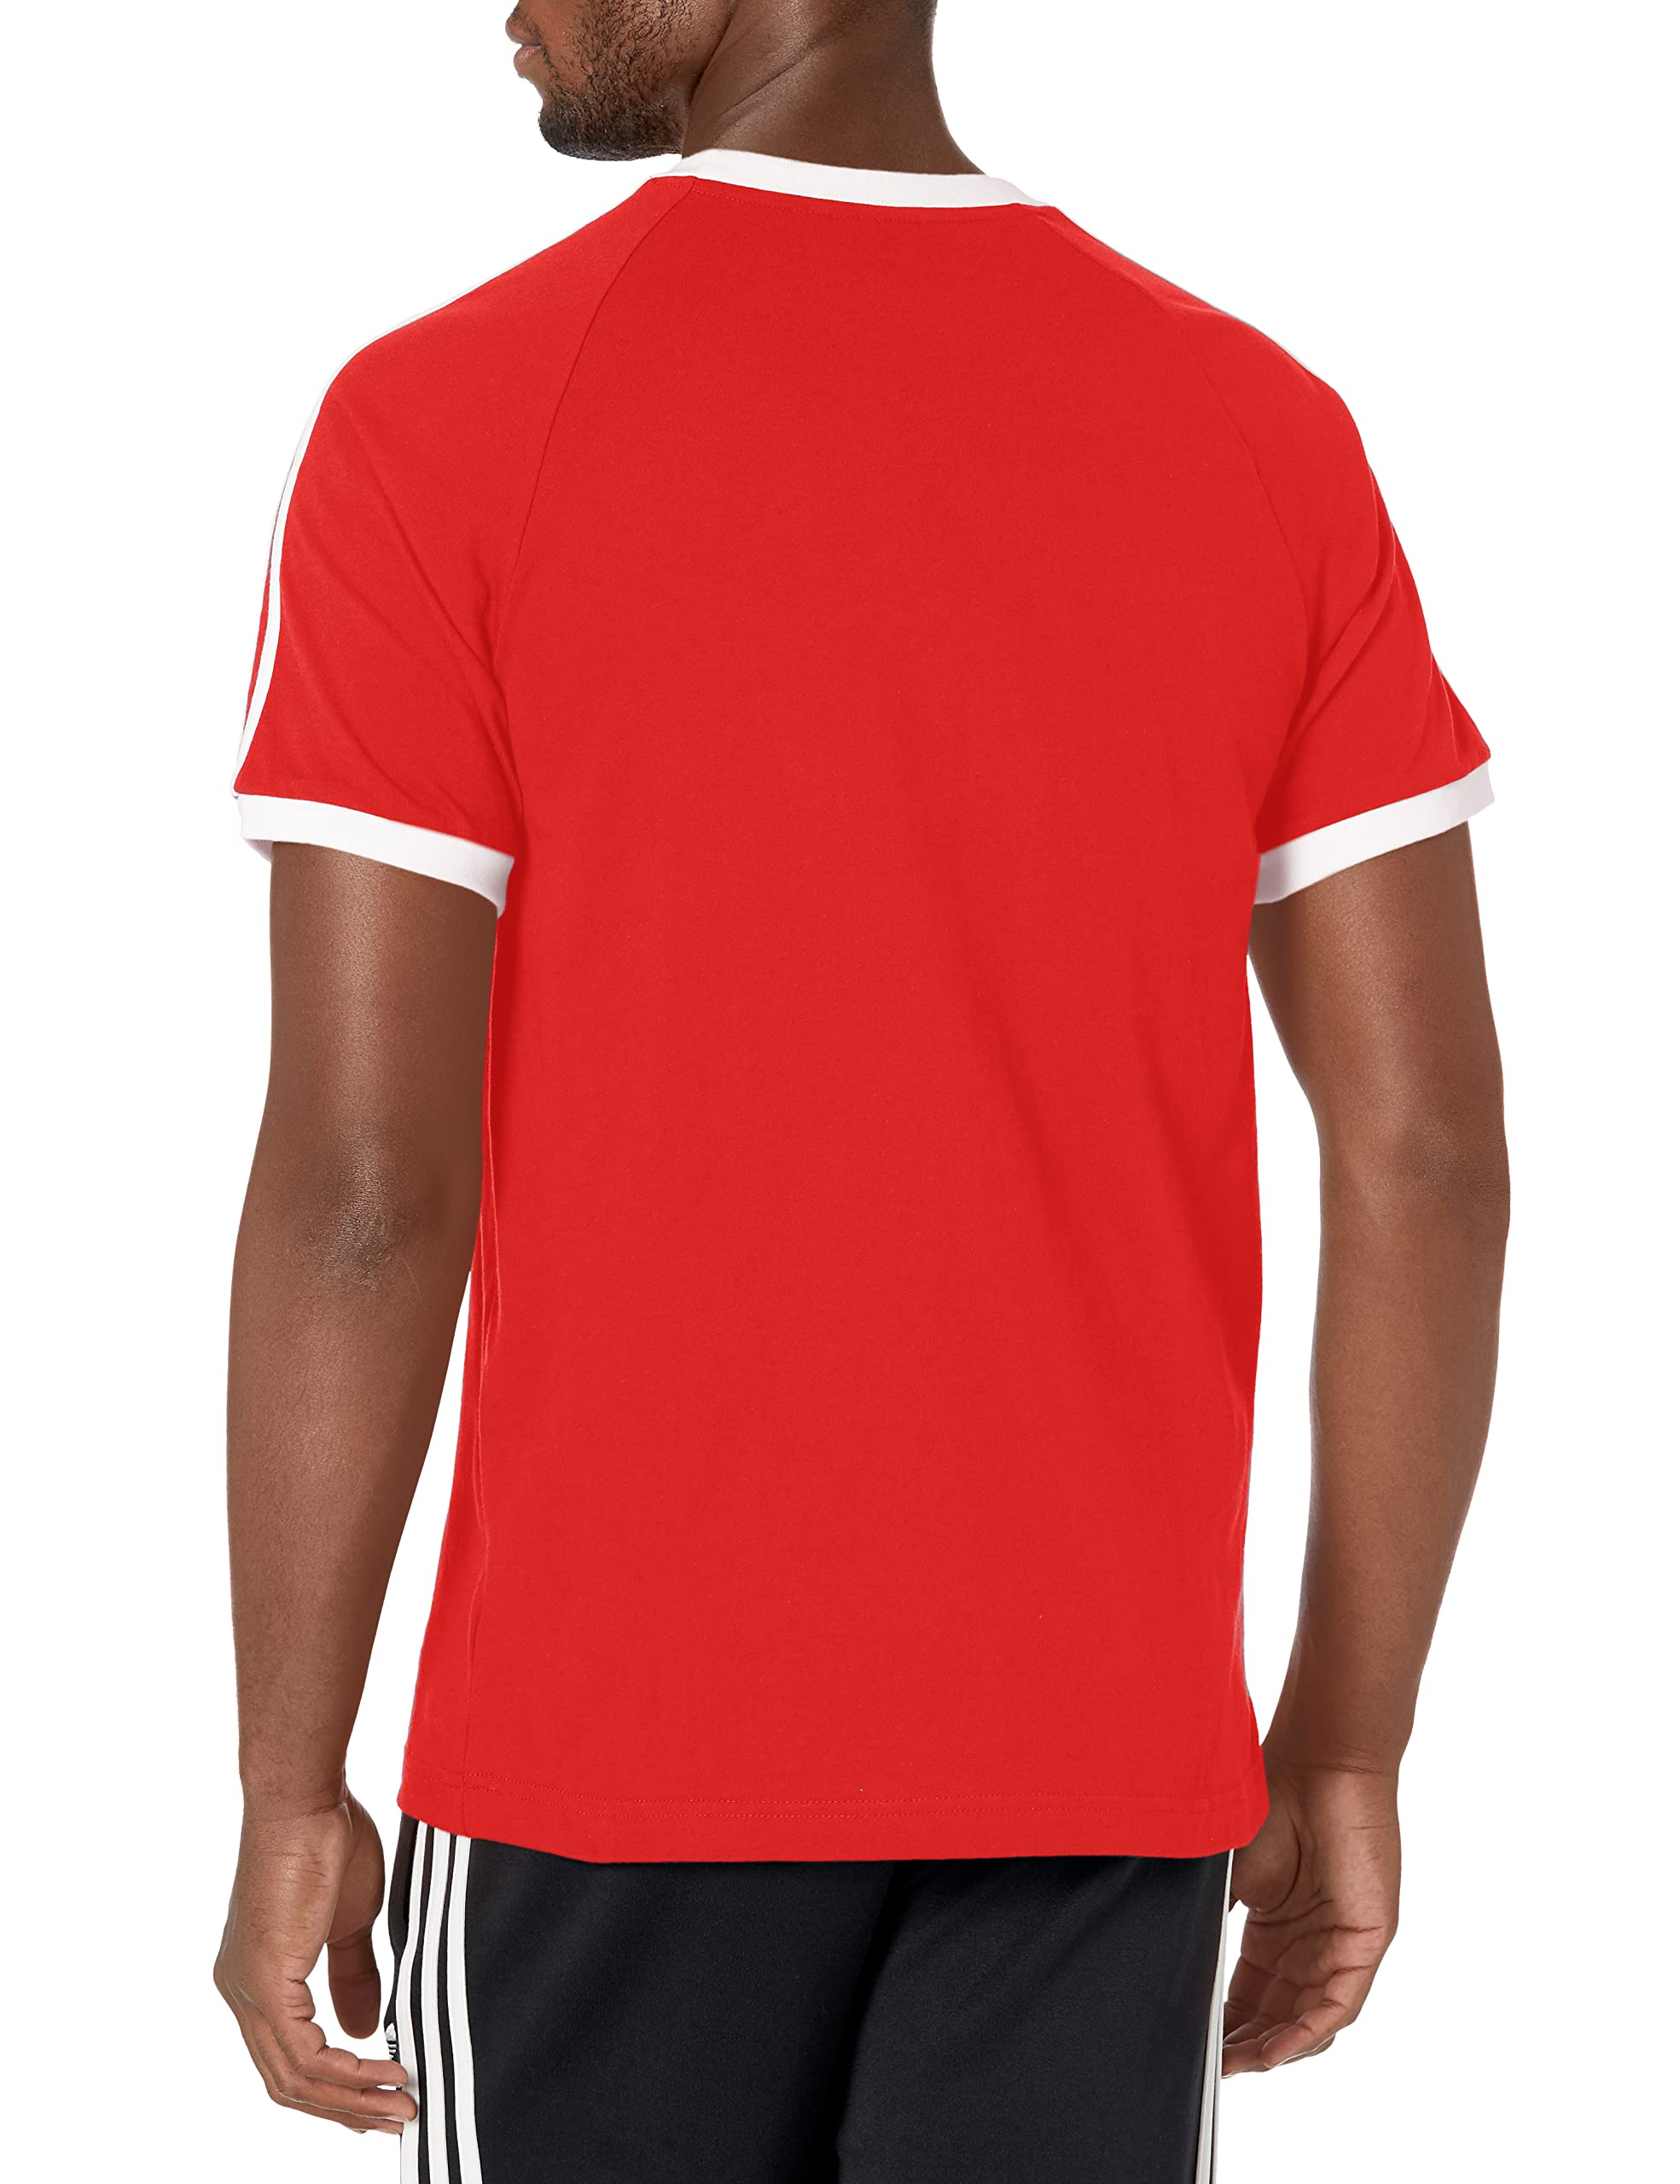 adidas Originals Men's 3-Stripes T-Shirt